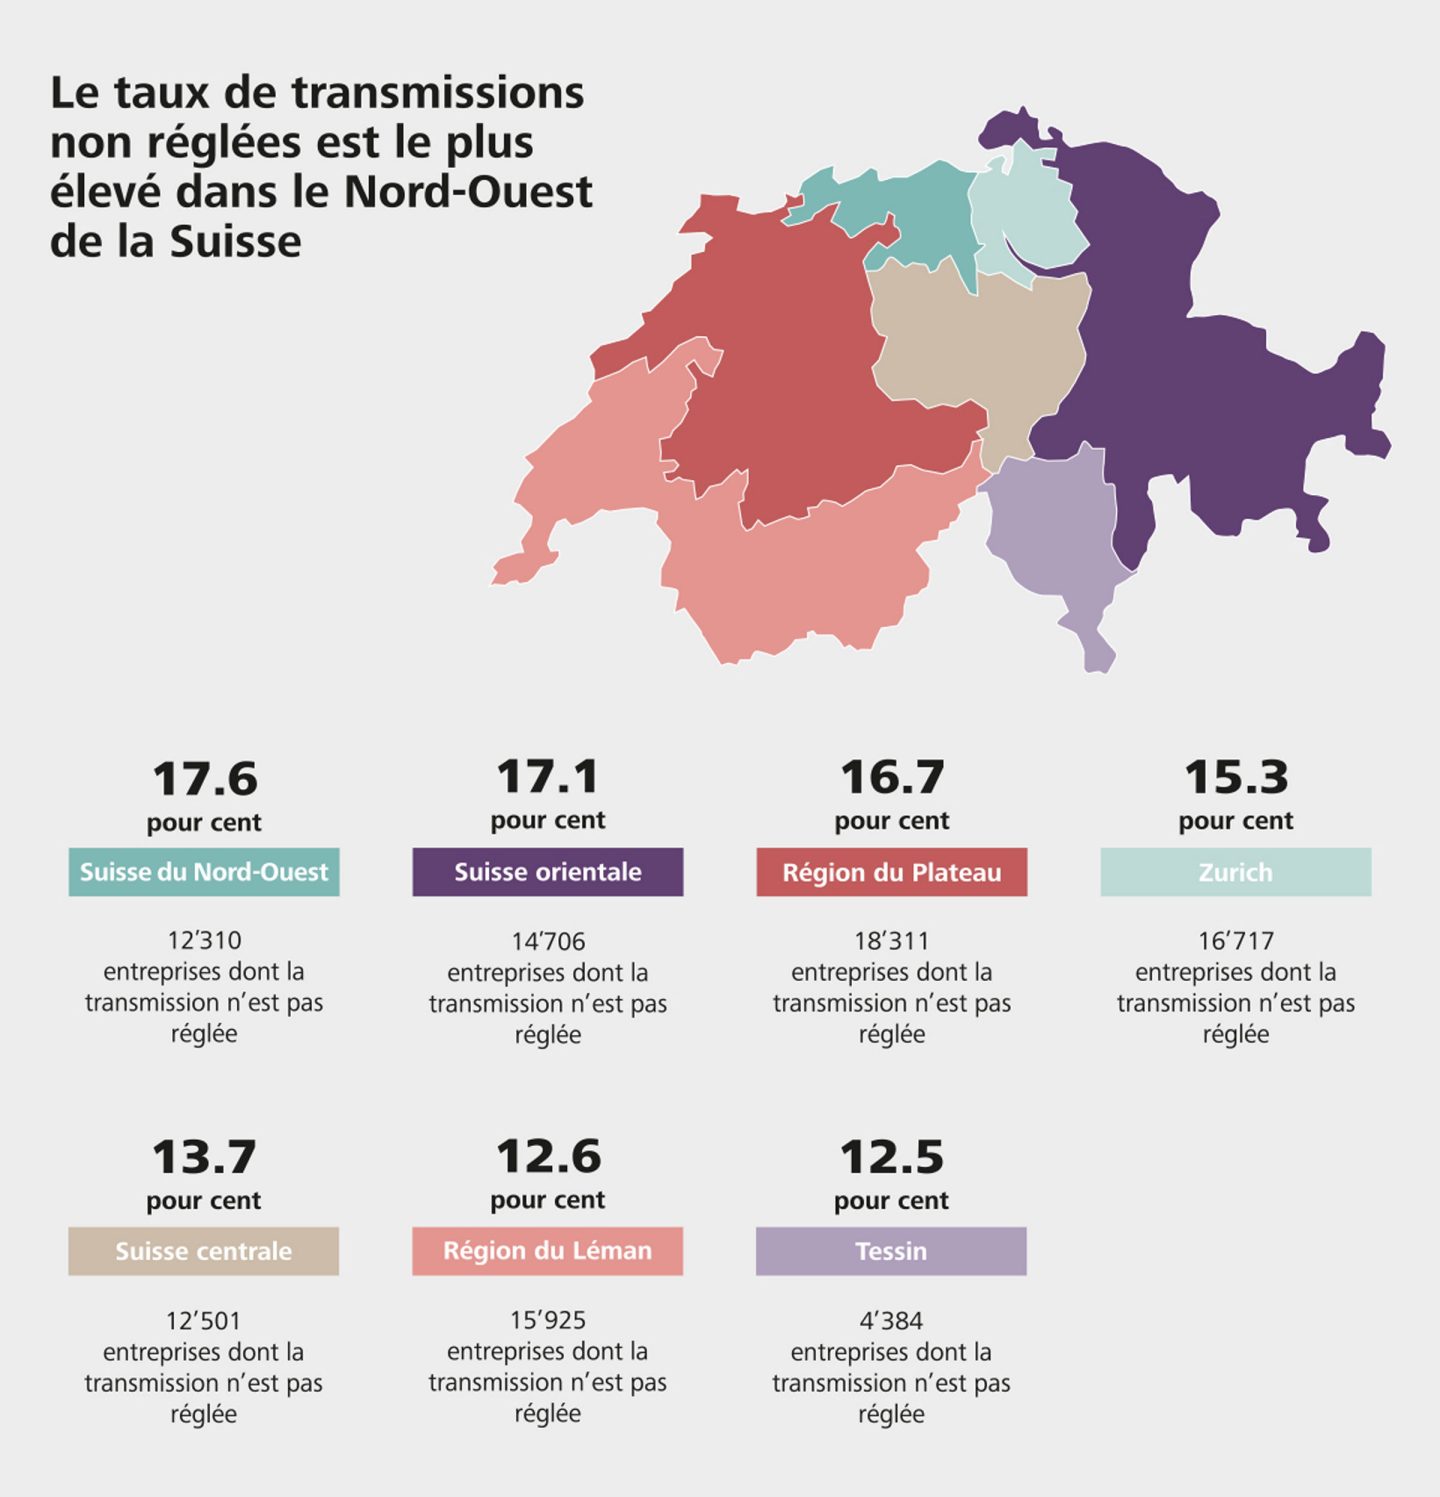 Le taux de transmissions non réglées est le plus élevé dans la Suisse du Nord-Ouest